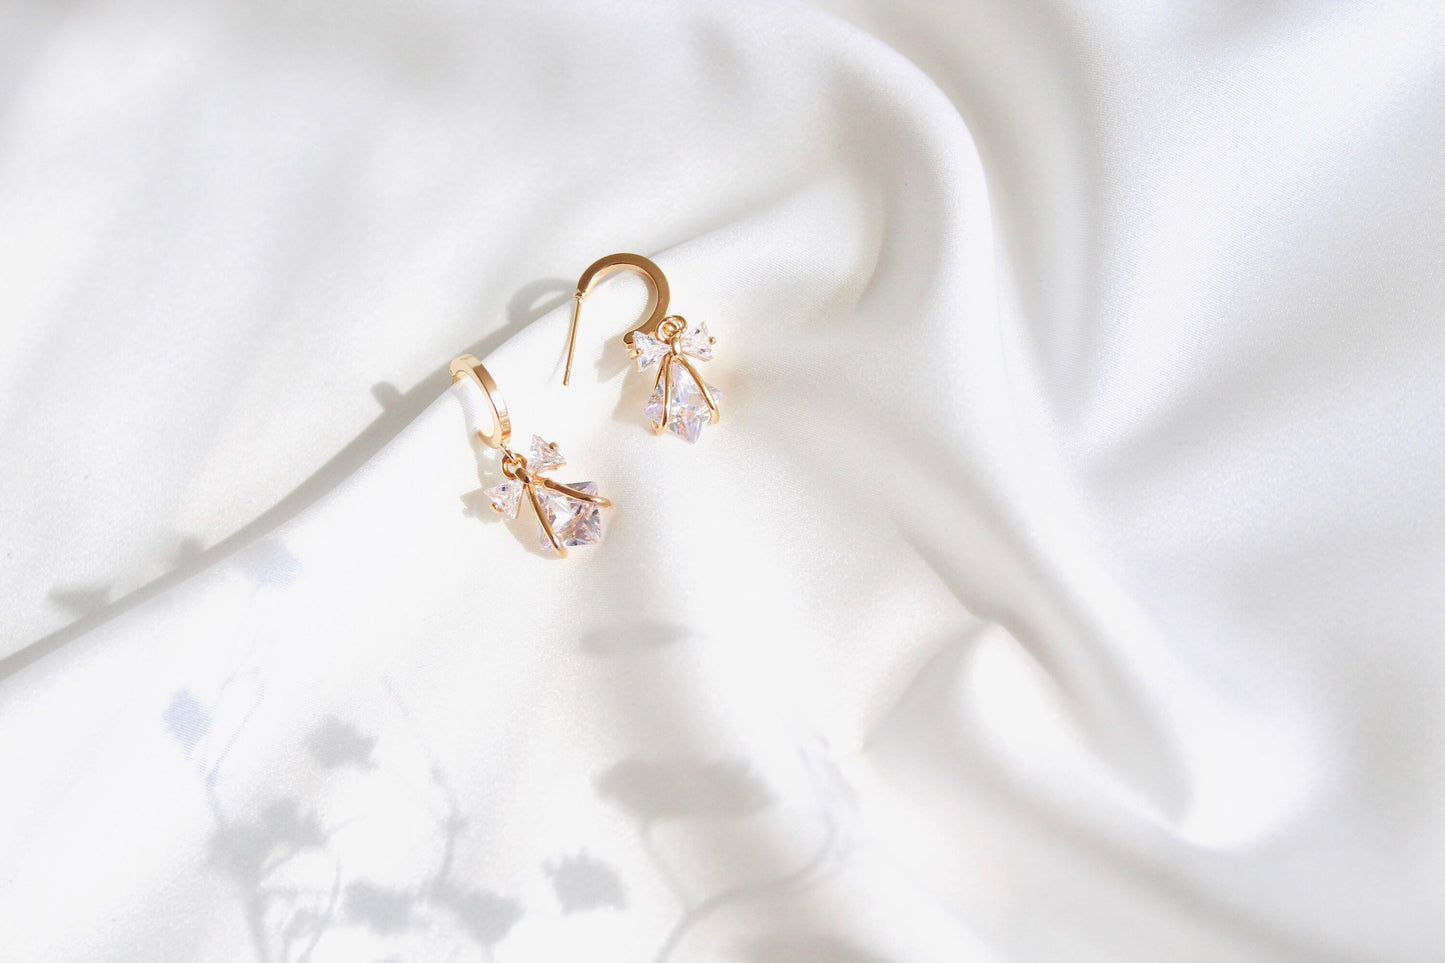 Bridal earrings | gold charm hoop Earrings, Minimalist Gold plated hoop earrings - gold plated Cz dangle | wedding earrings